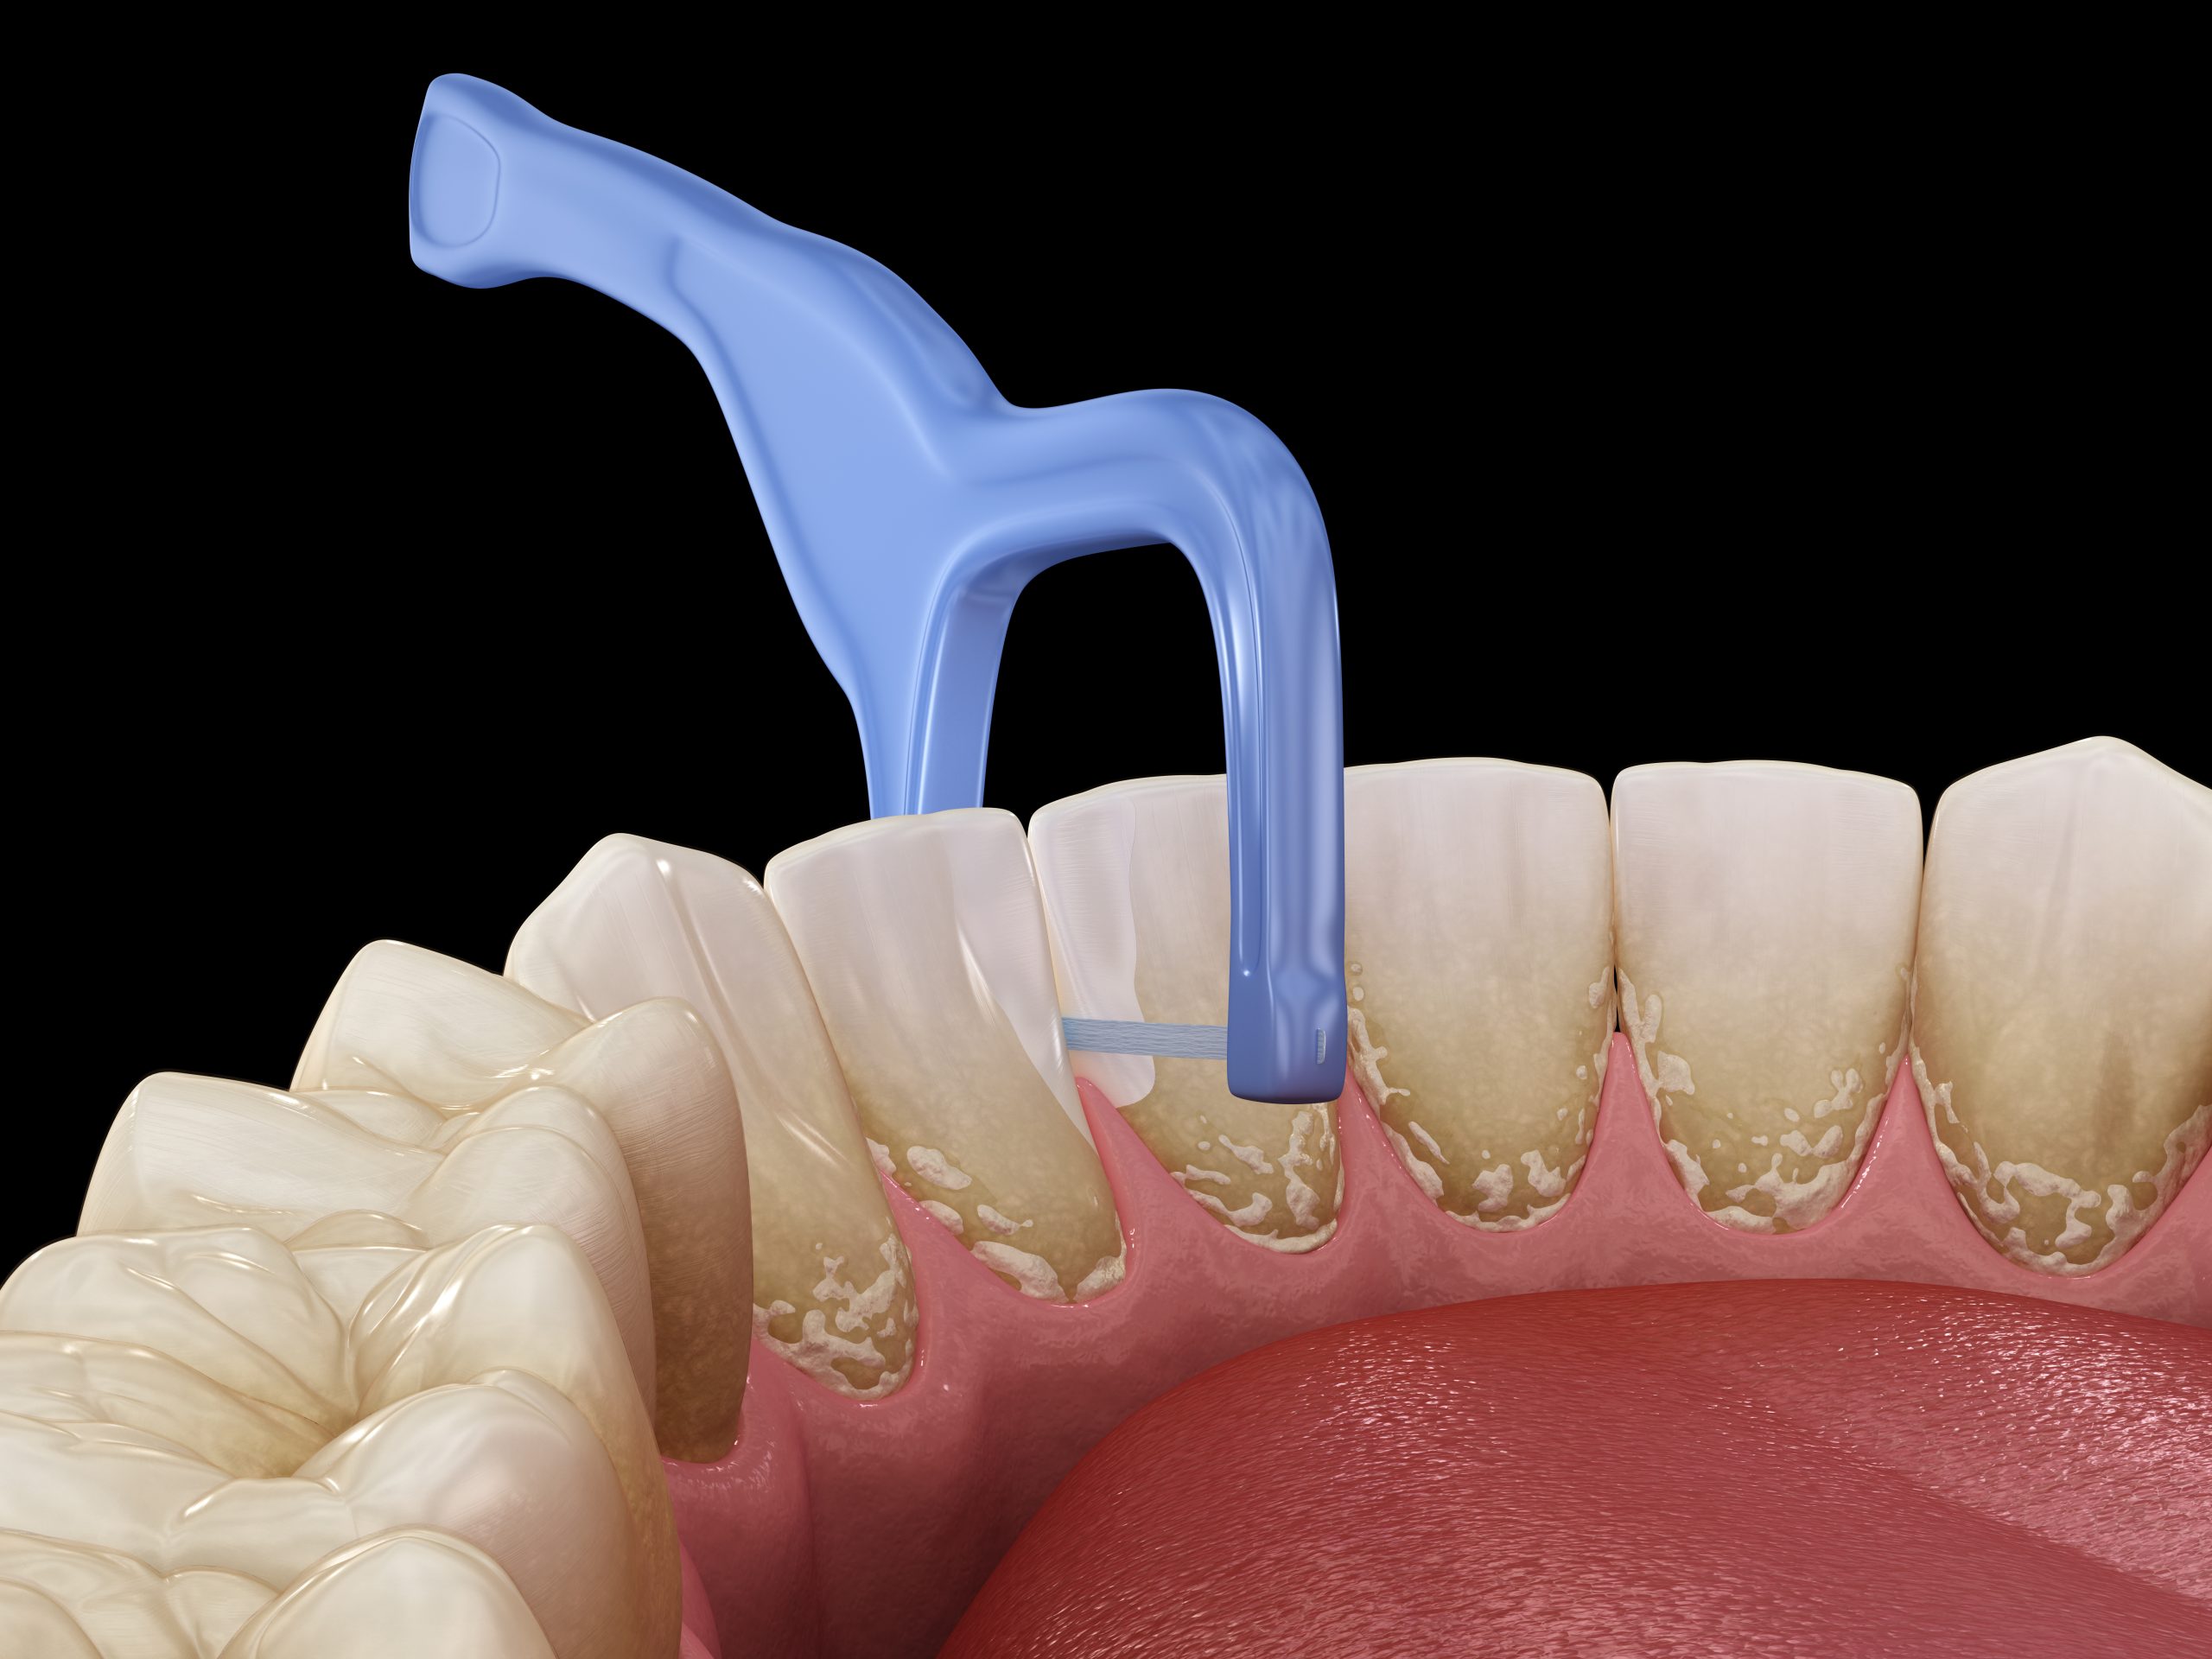 پیشگیری از پوسیدگی دندان با رعایت بهداشت دهان و دندان